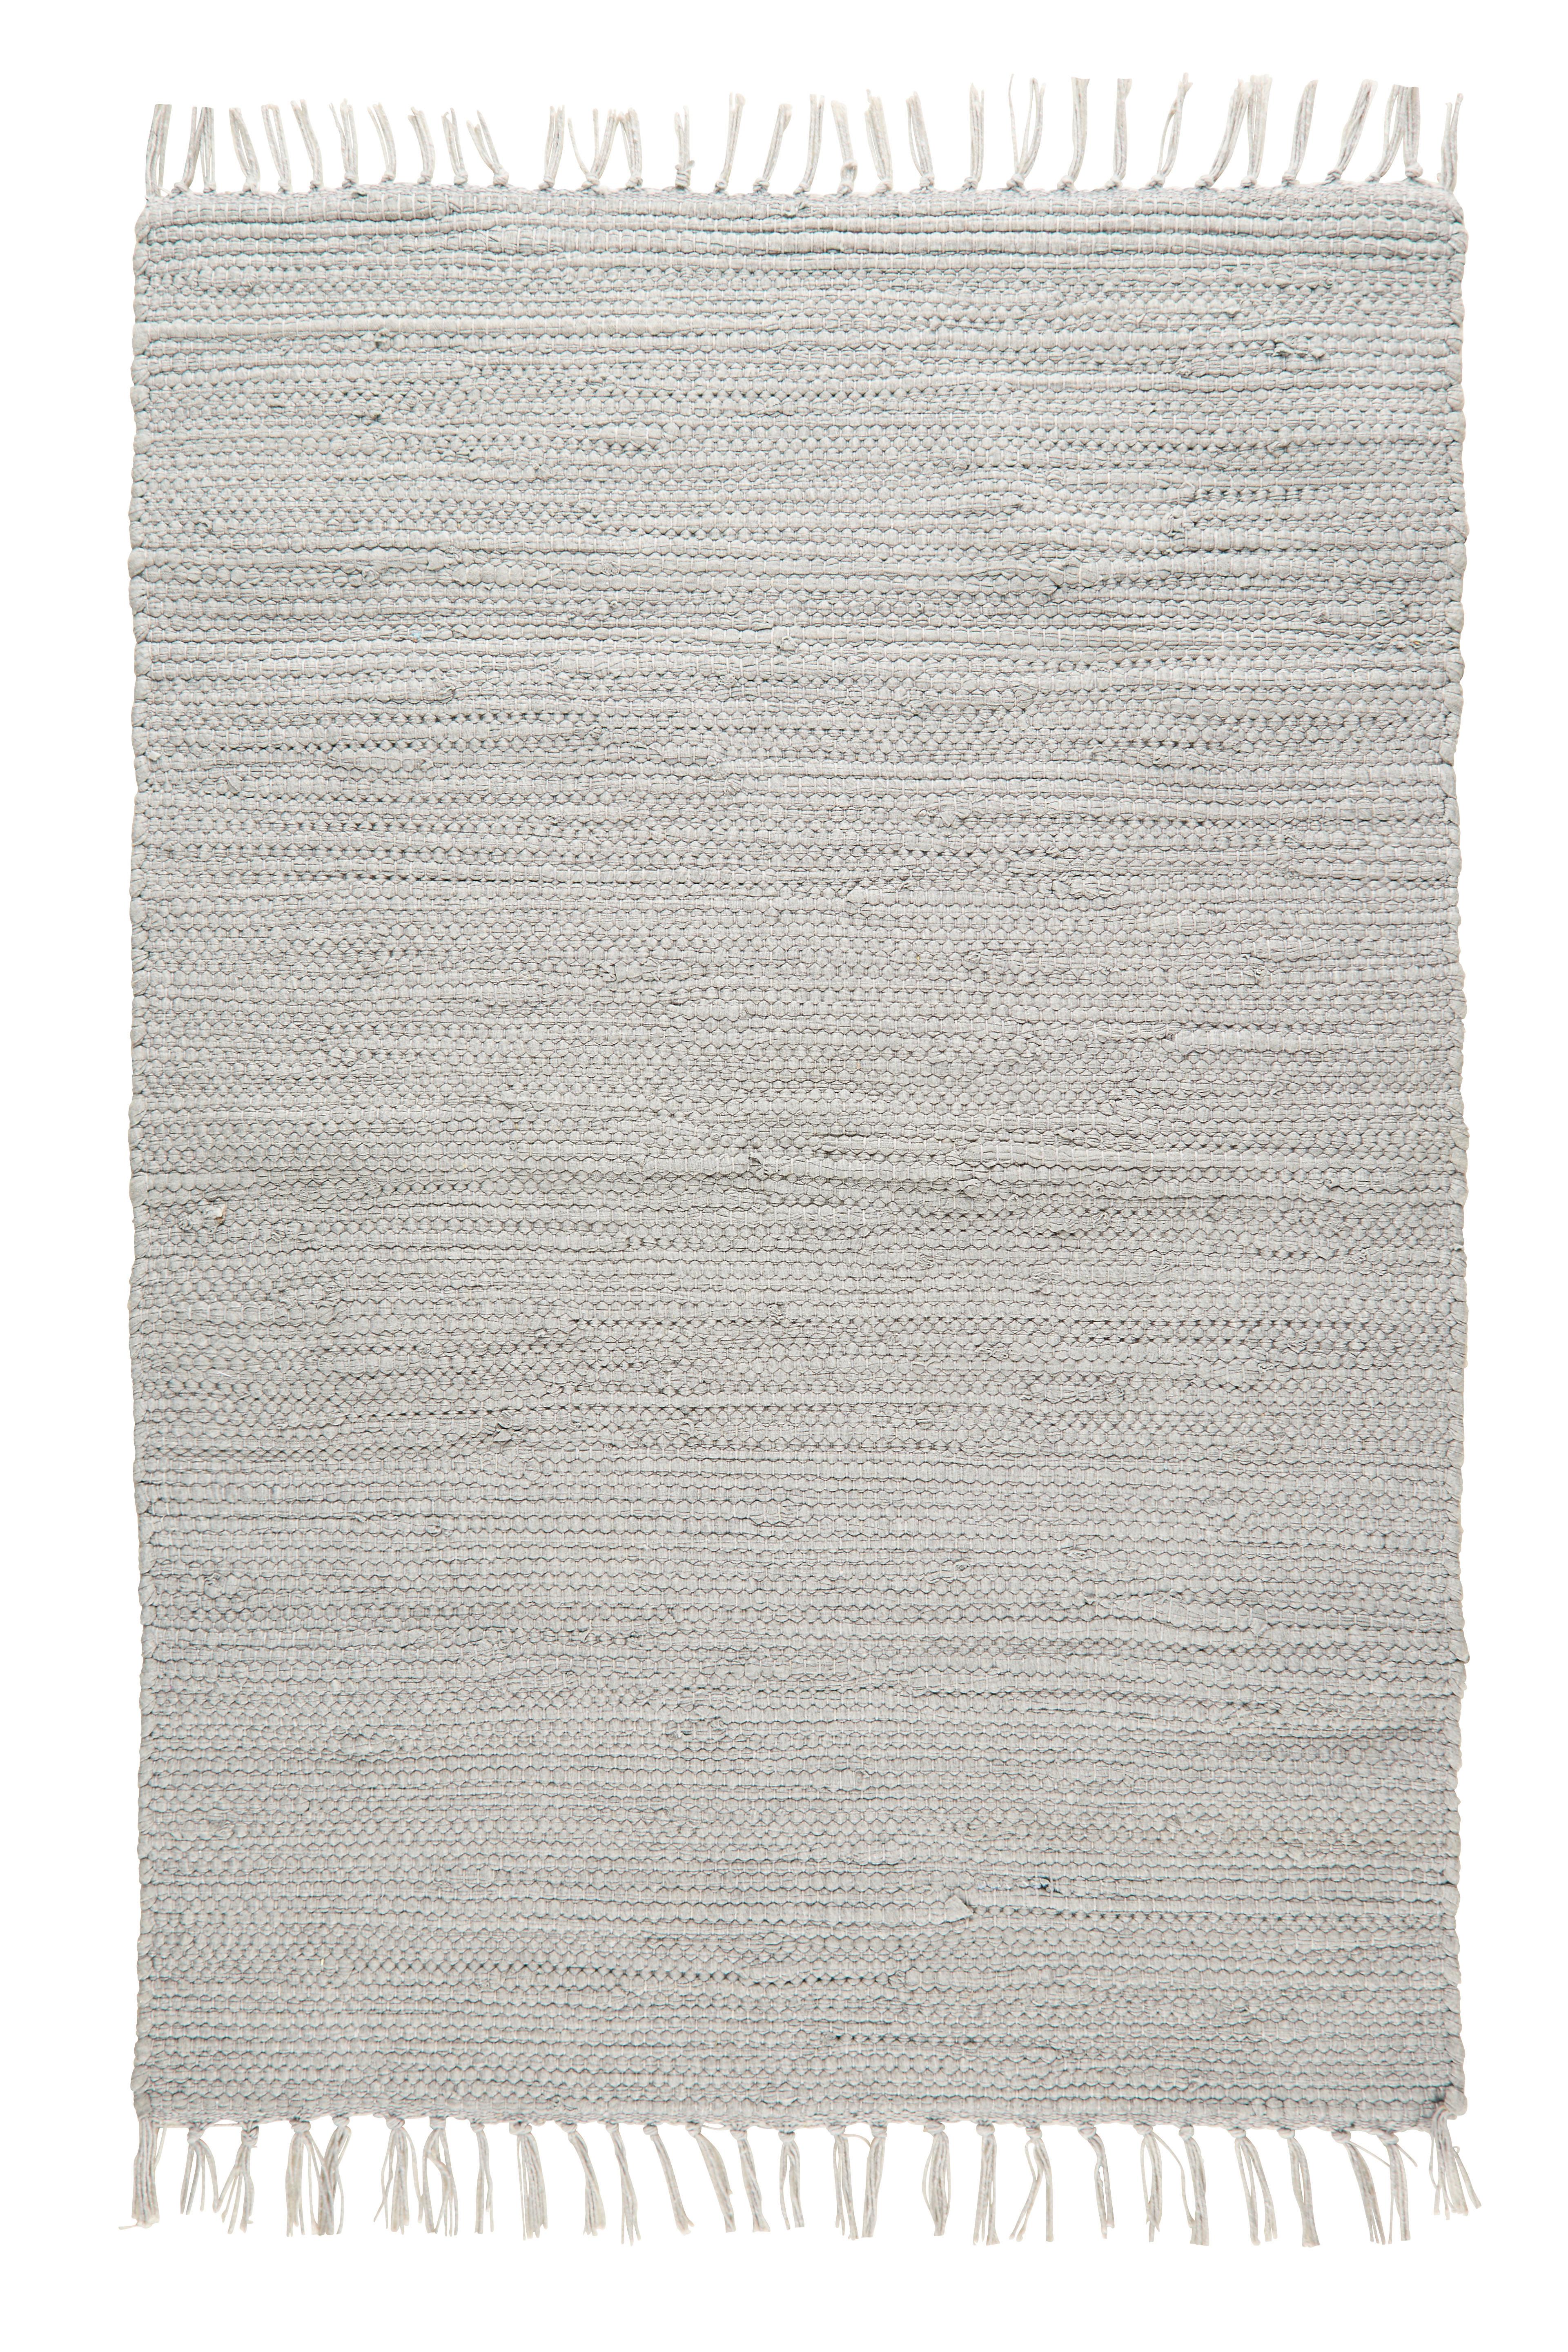 Tkaný Handričkový Koberec Julia 2, 70/130cm, Sivá - sivá, Romantický / Vidiecky, textil (70/130cm) - Modern Living